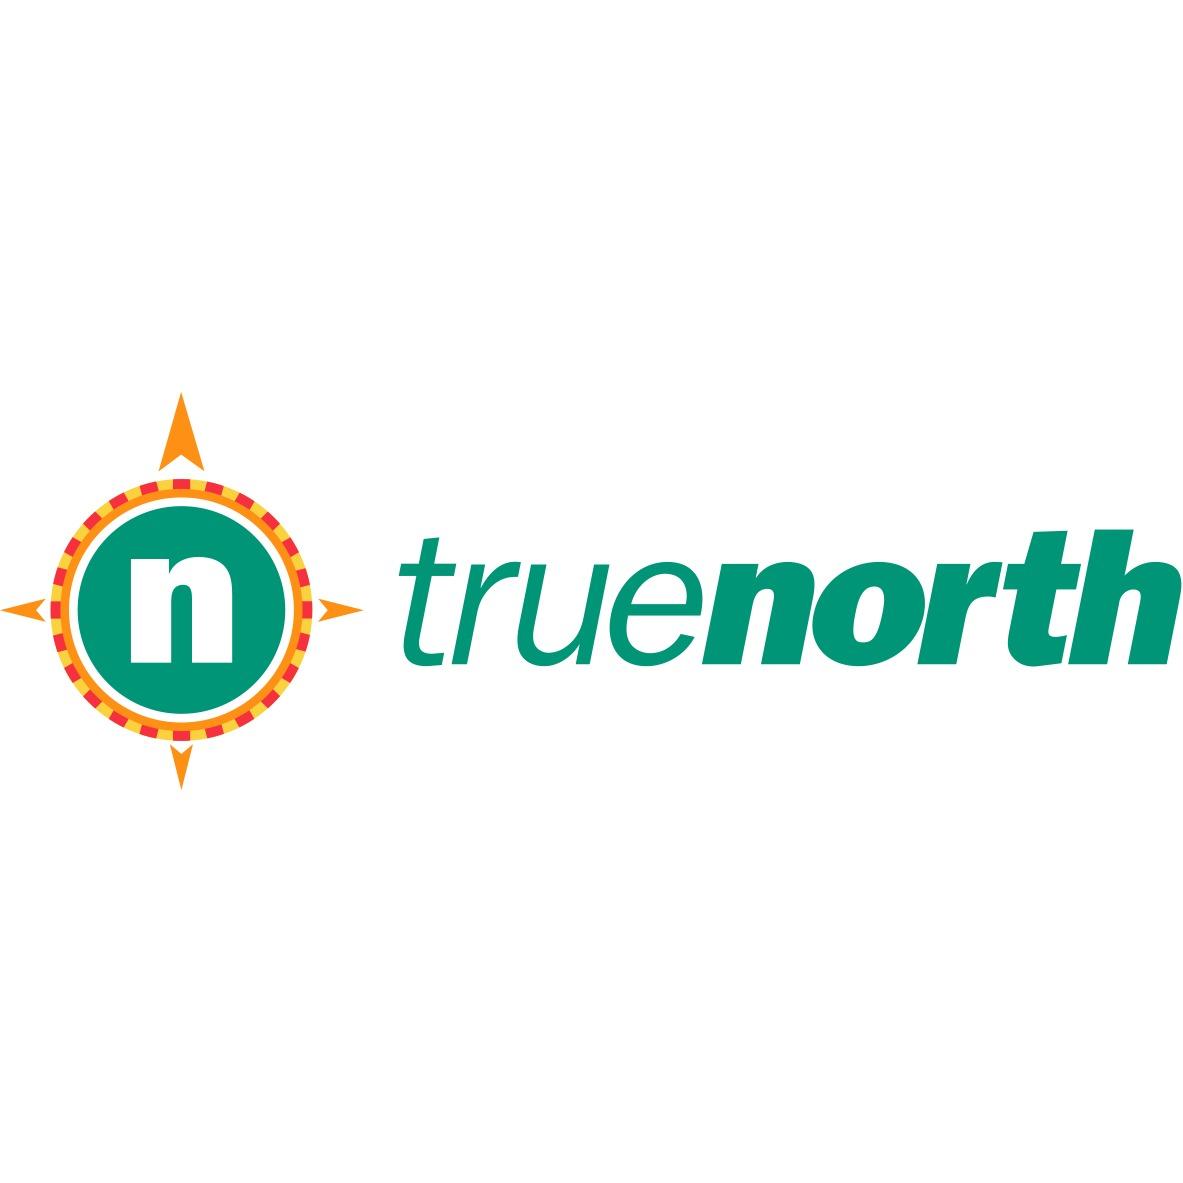 truenorth Logo